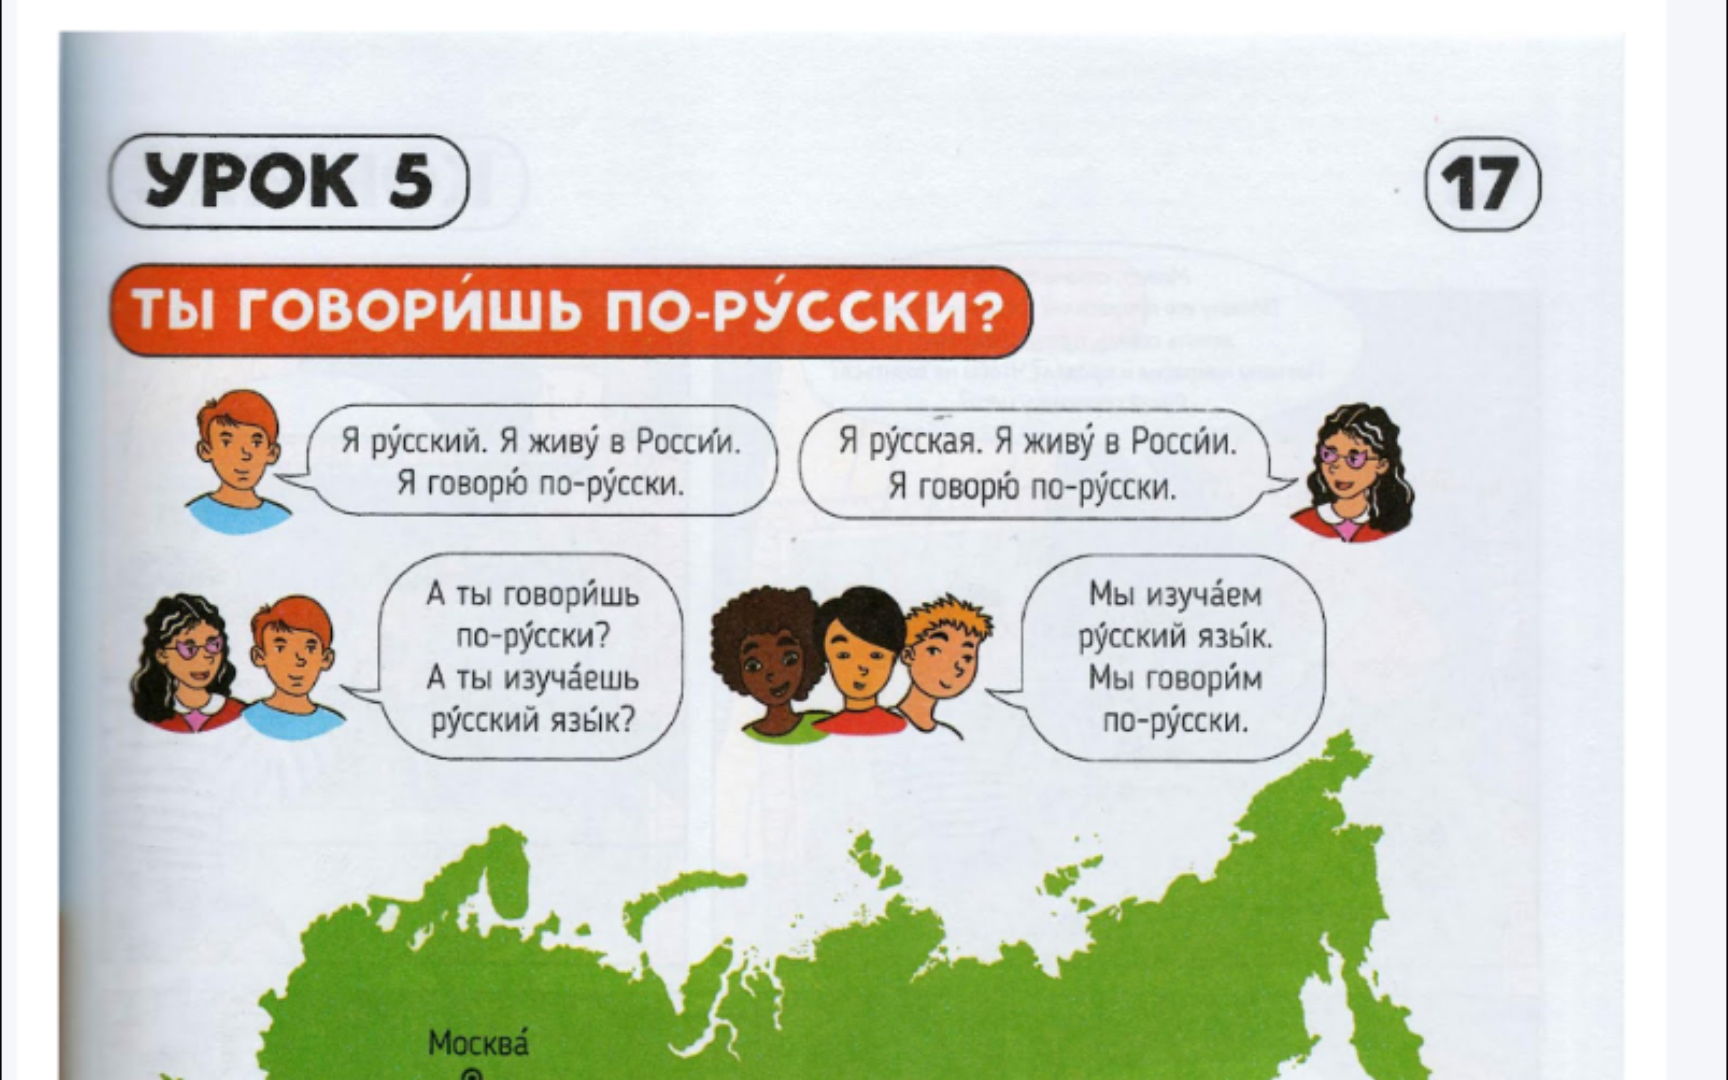 【俄语对话】你说俄语吗?